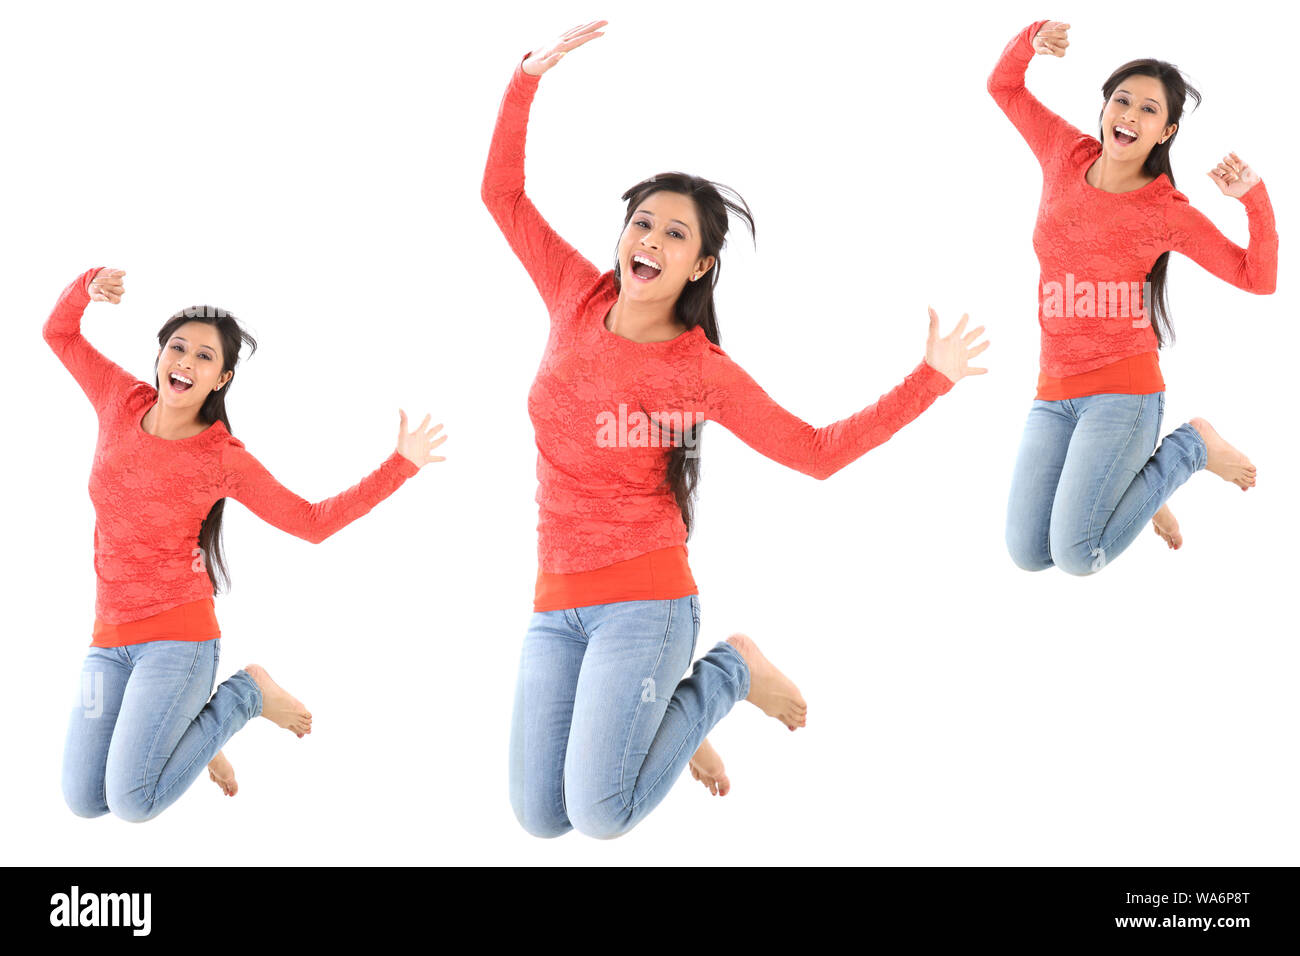 Immagini multiple di una giovane donna che salta isolato su sfondo bianco Foto Stock